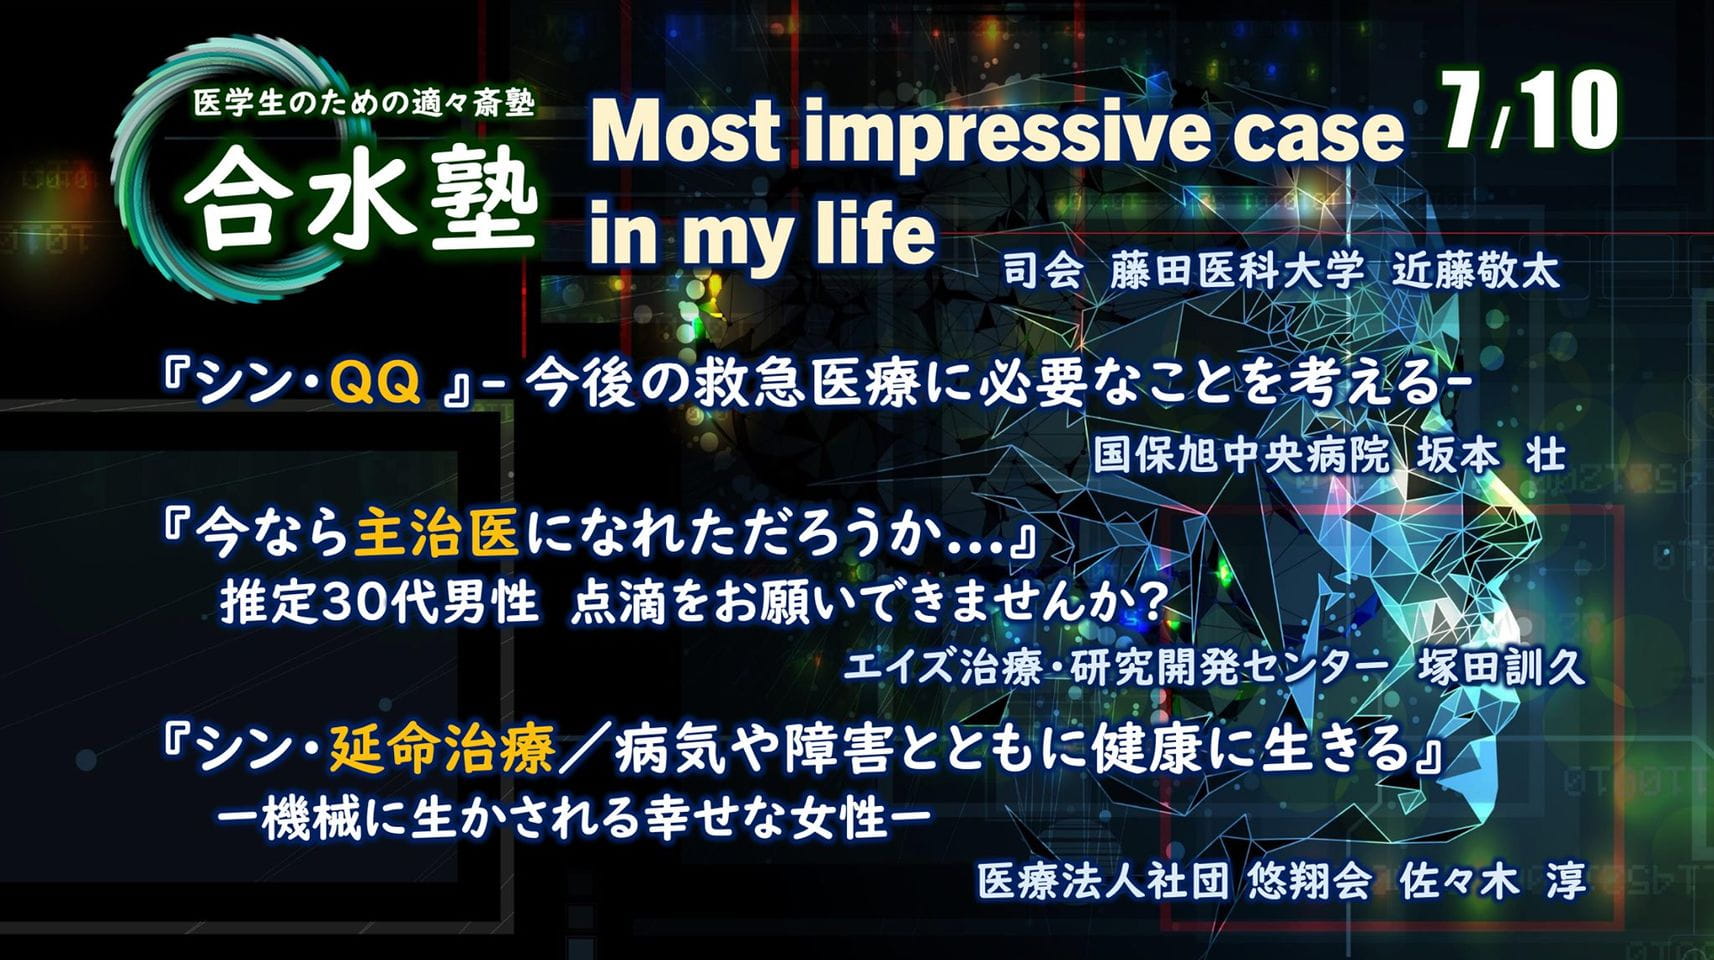 【第4回合水塾】Most impressive case in my life.